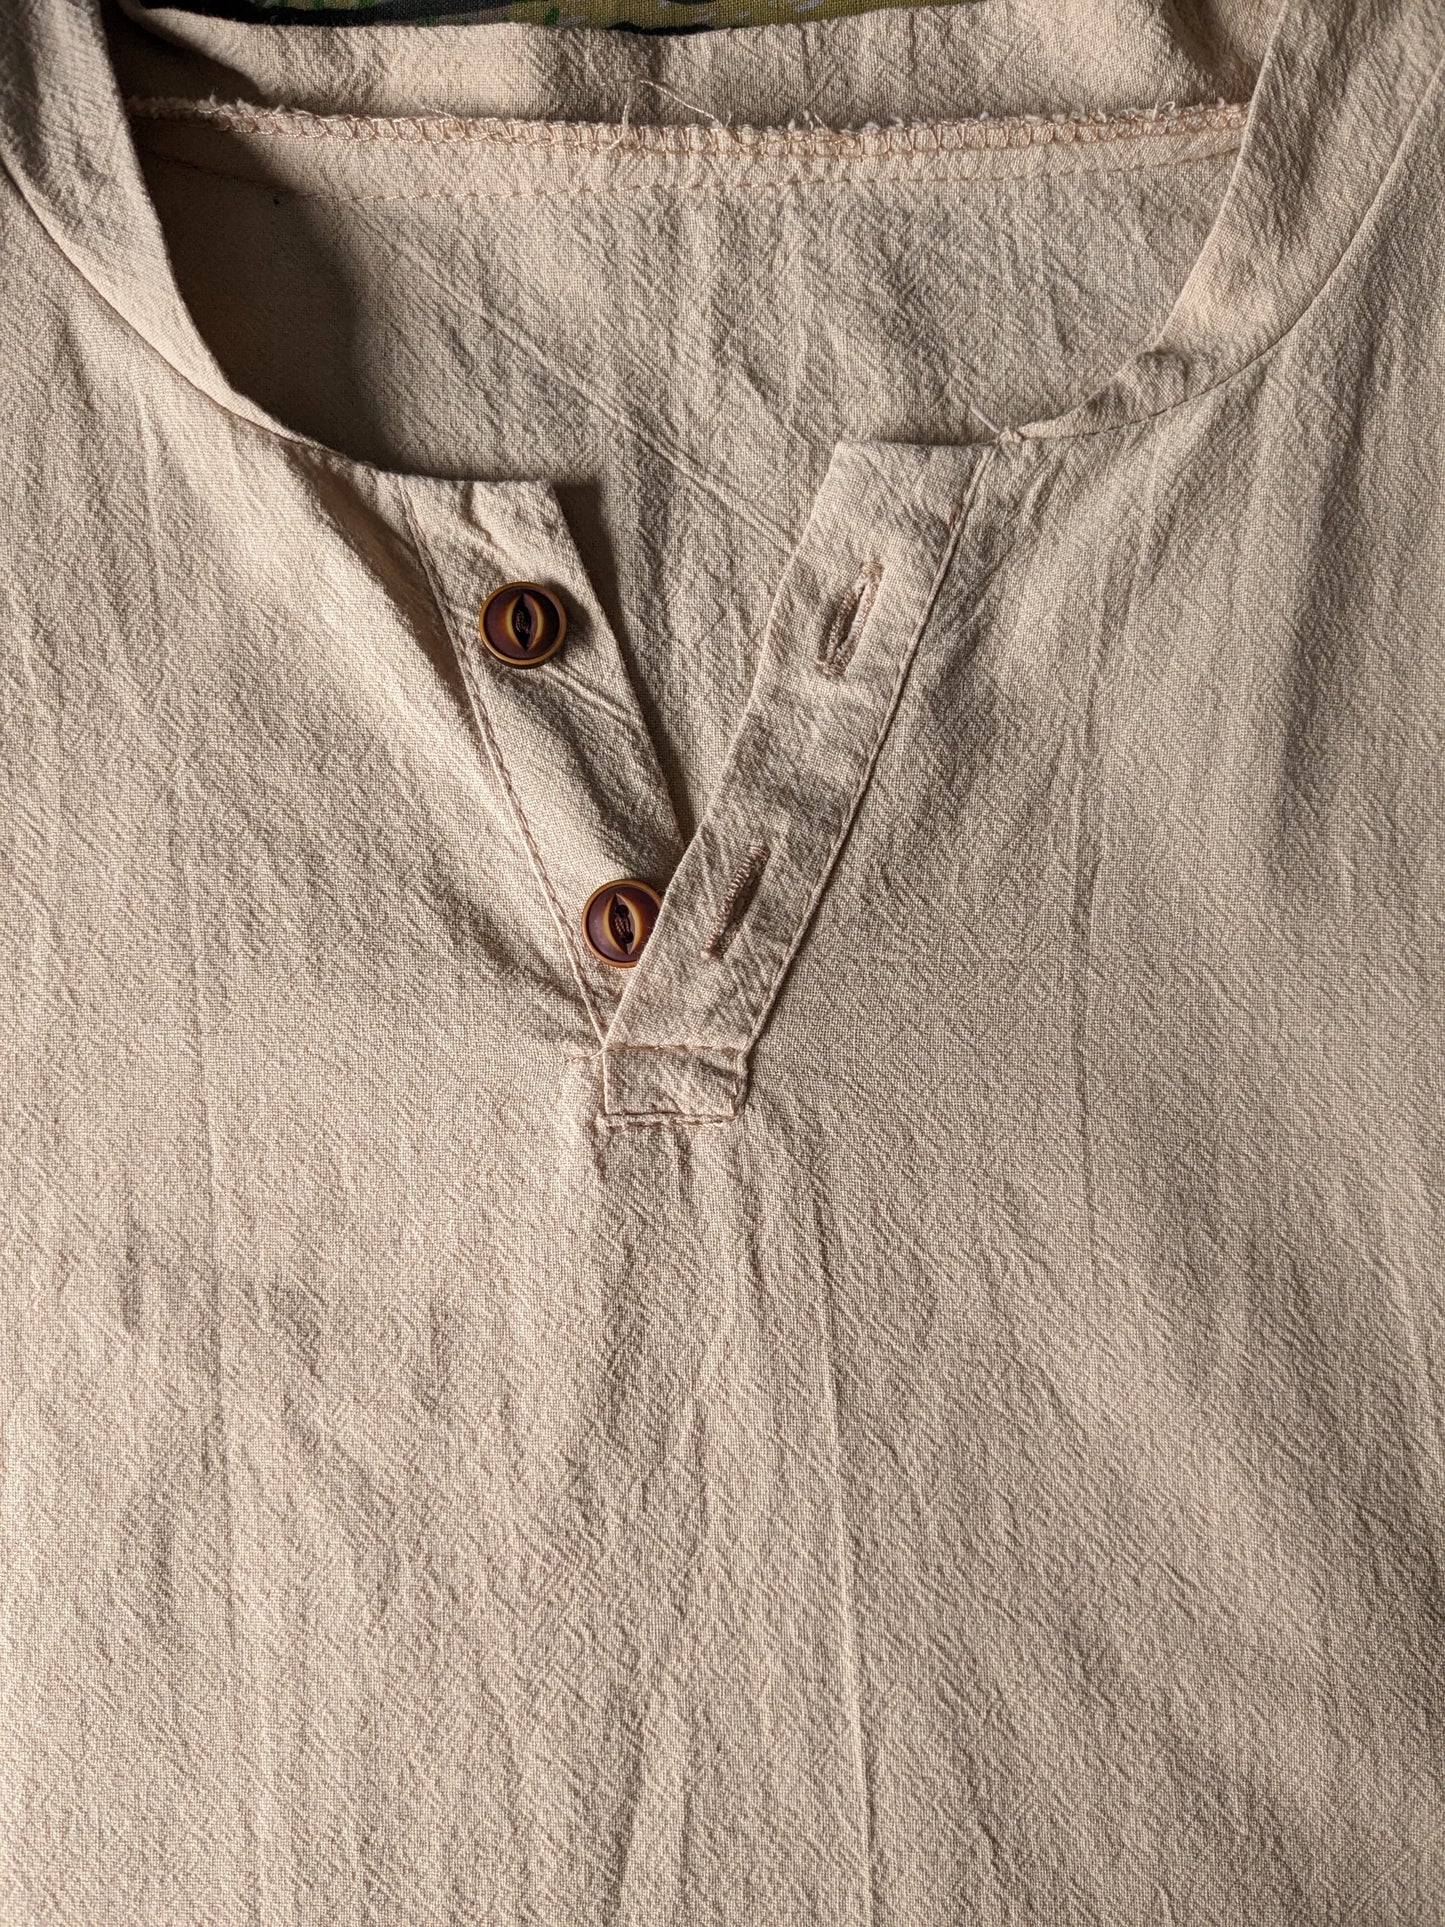 Camisa / polo vintage con collar y botones mao / elevados. Beige. Talla L.